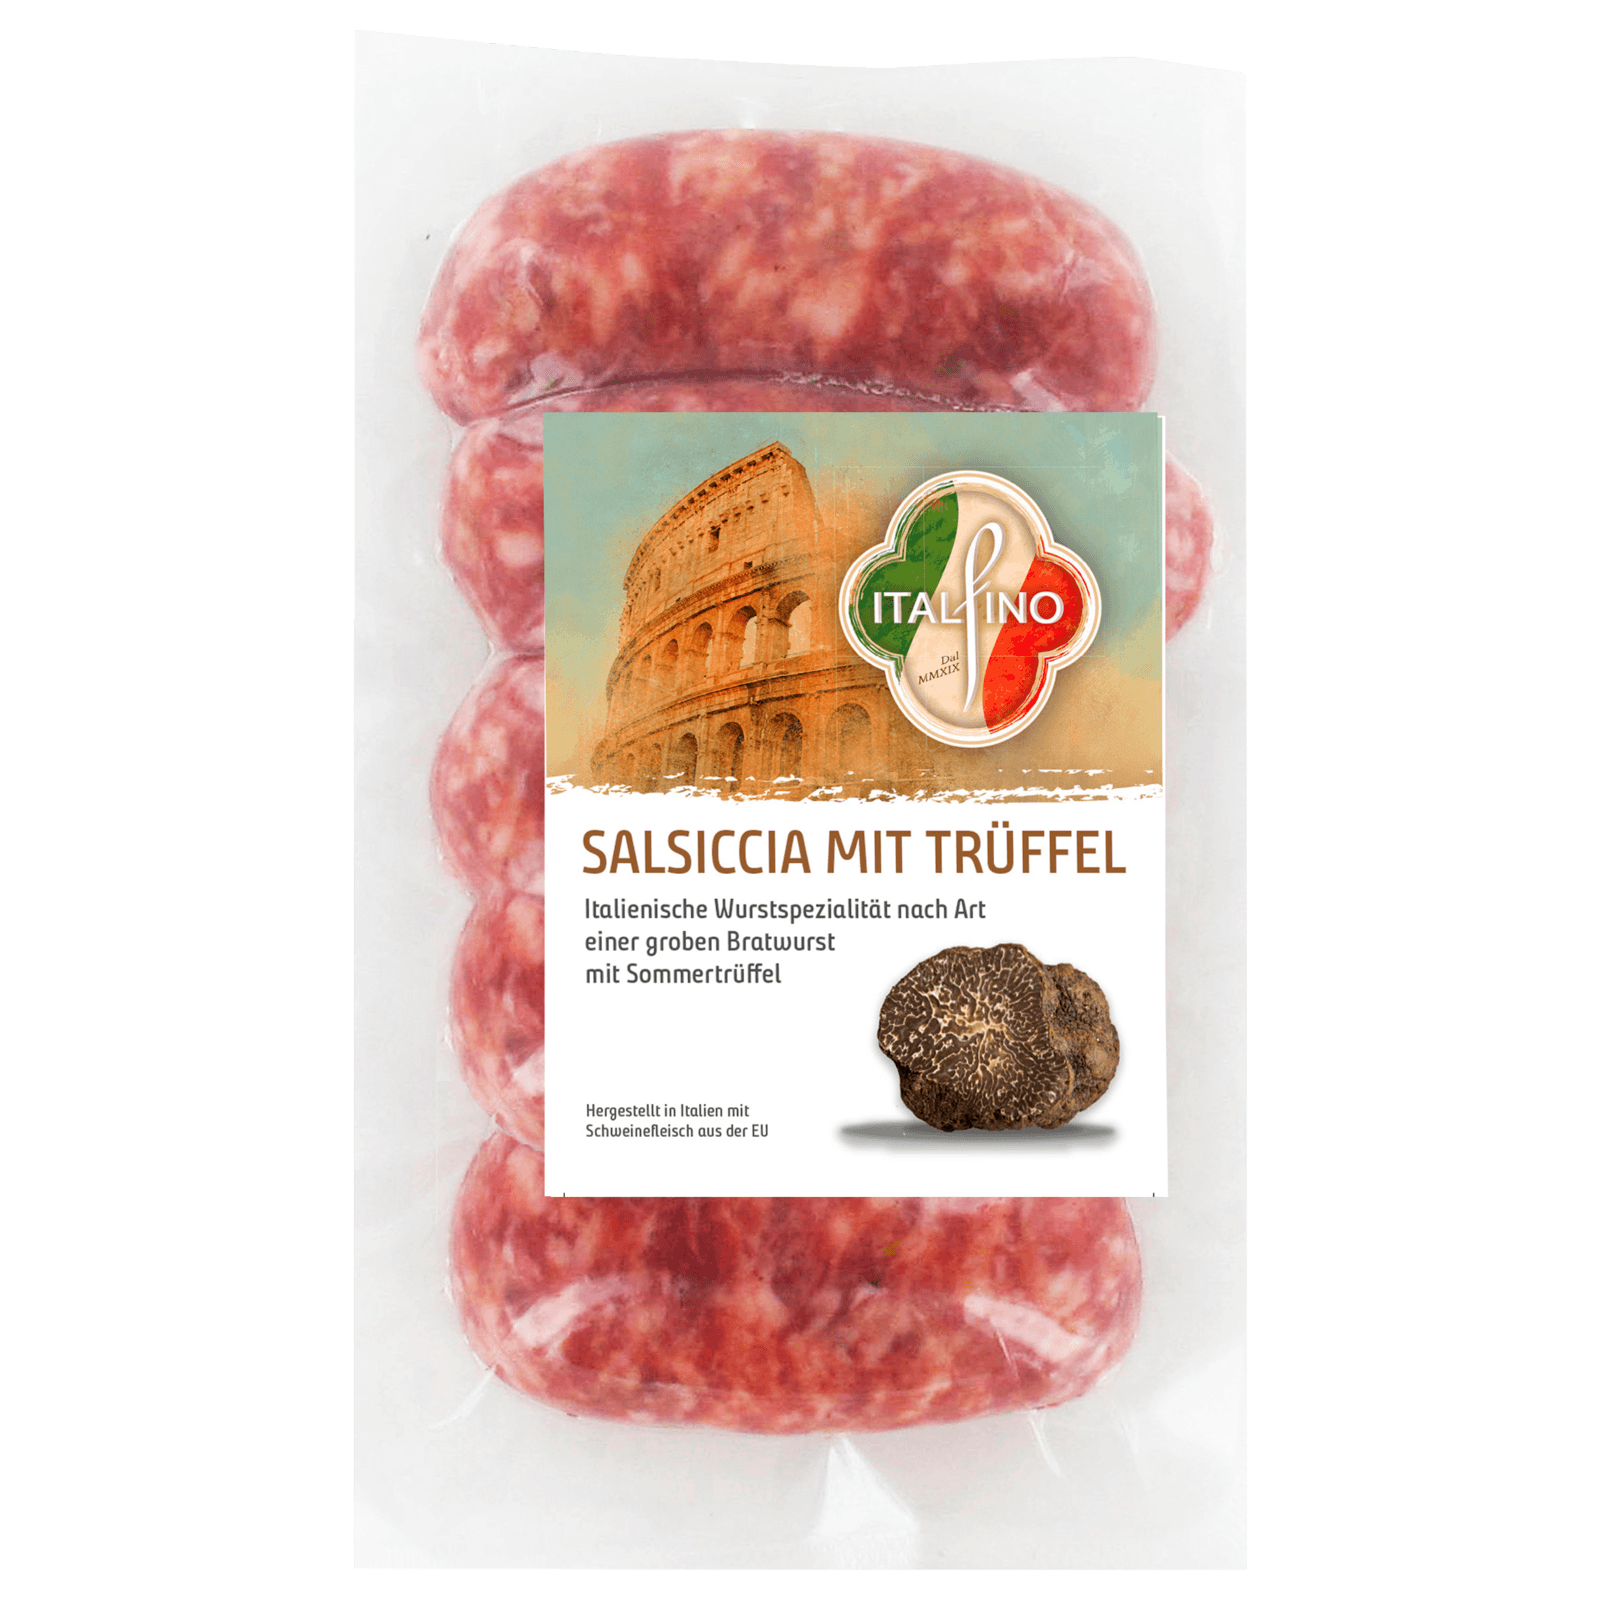 Italfino Salsiccia mit Trüffel 300g bei REWE online bestellen!